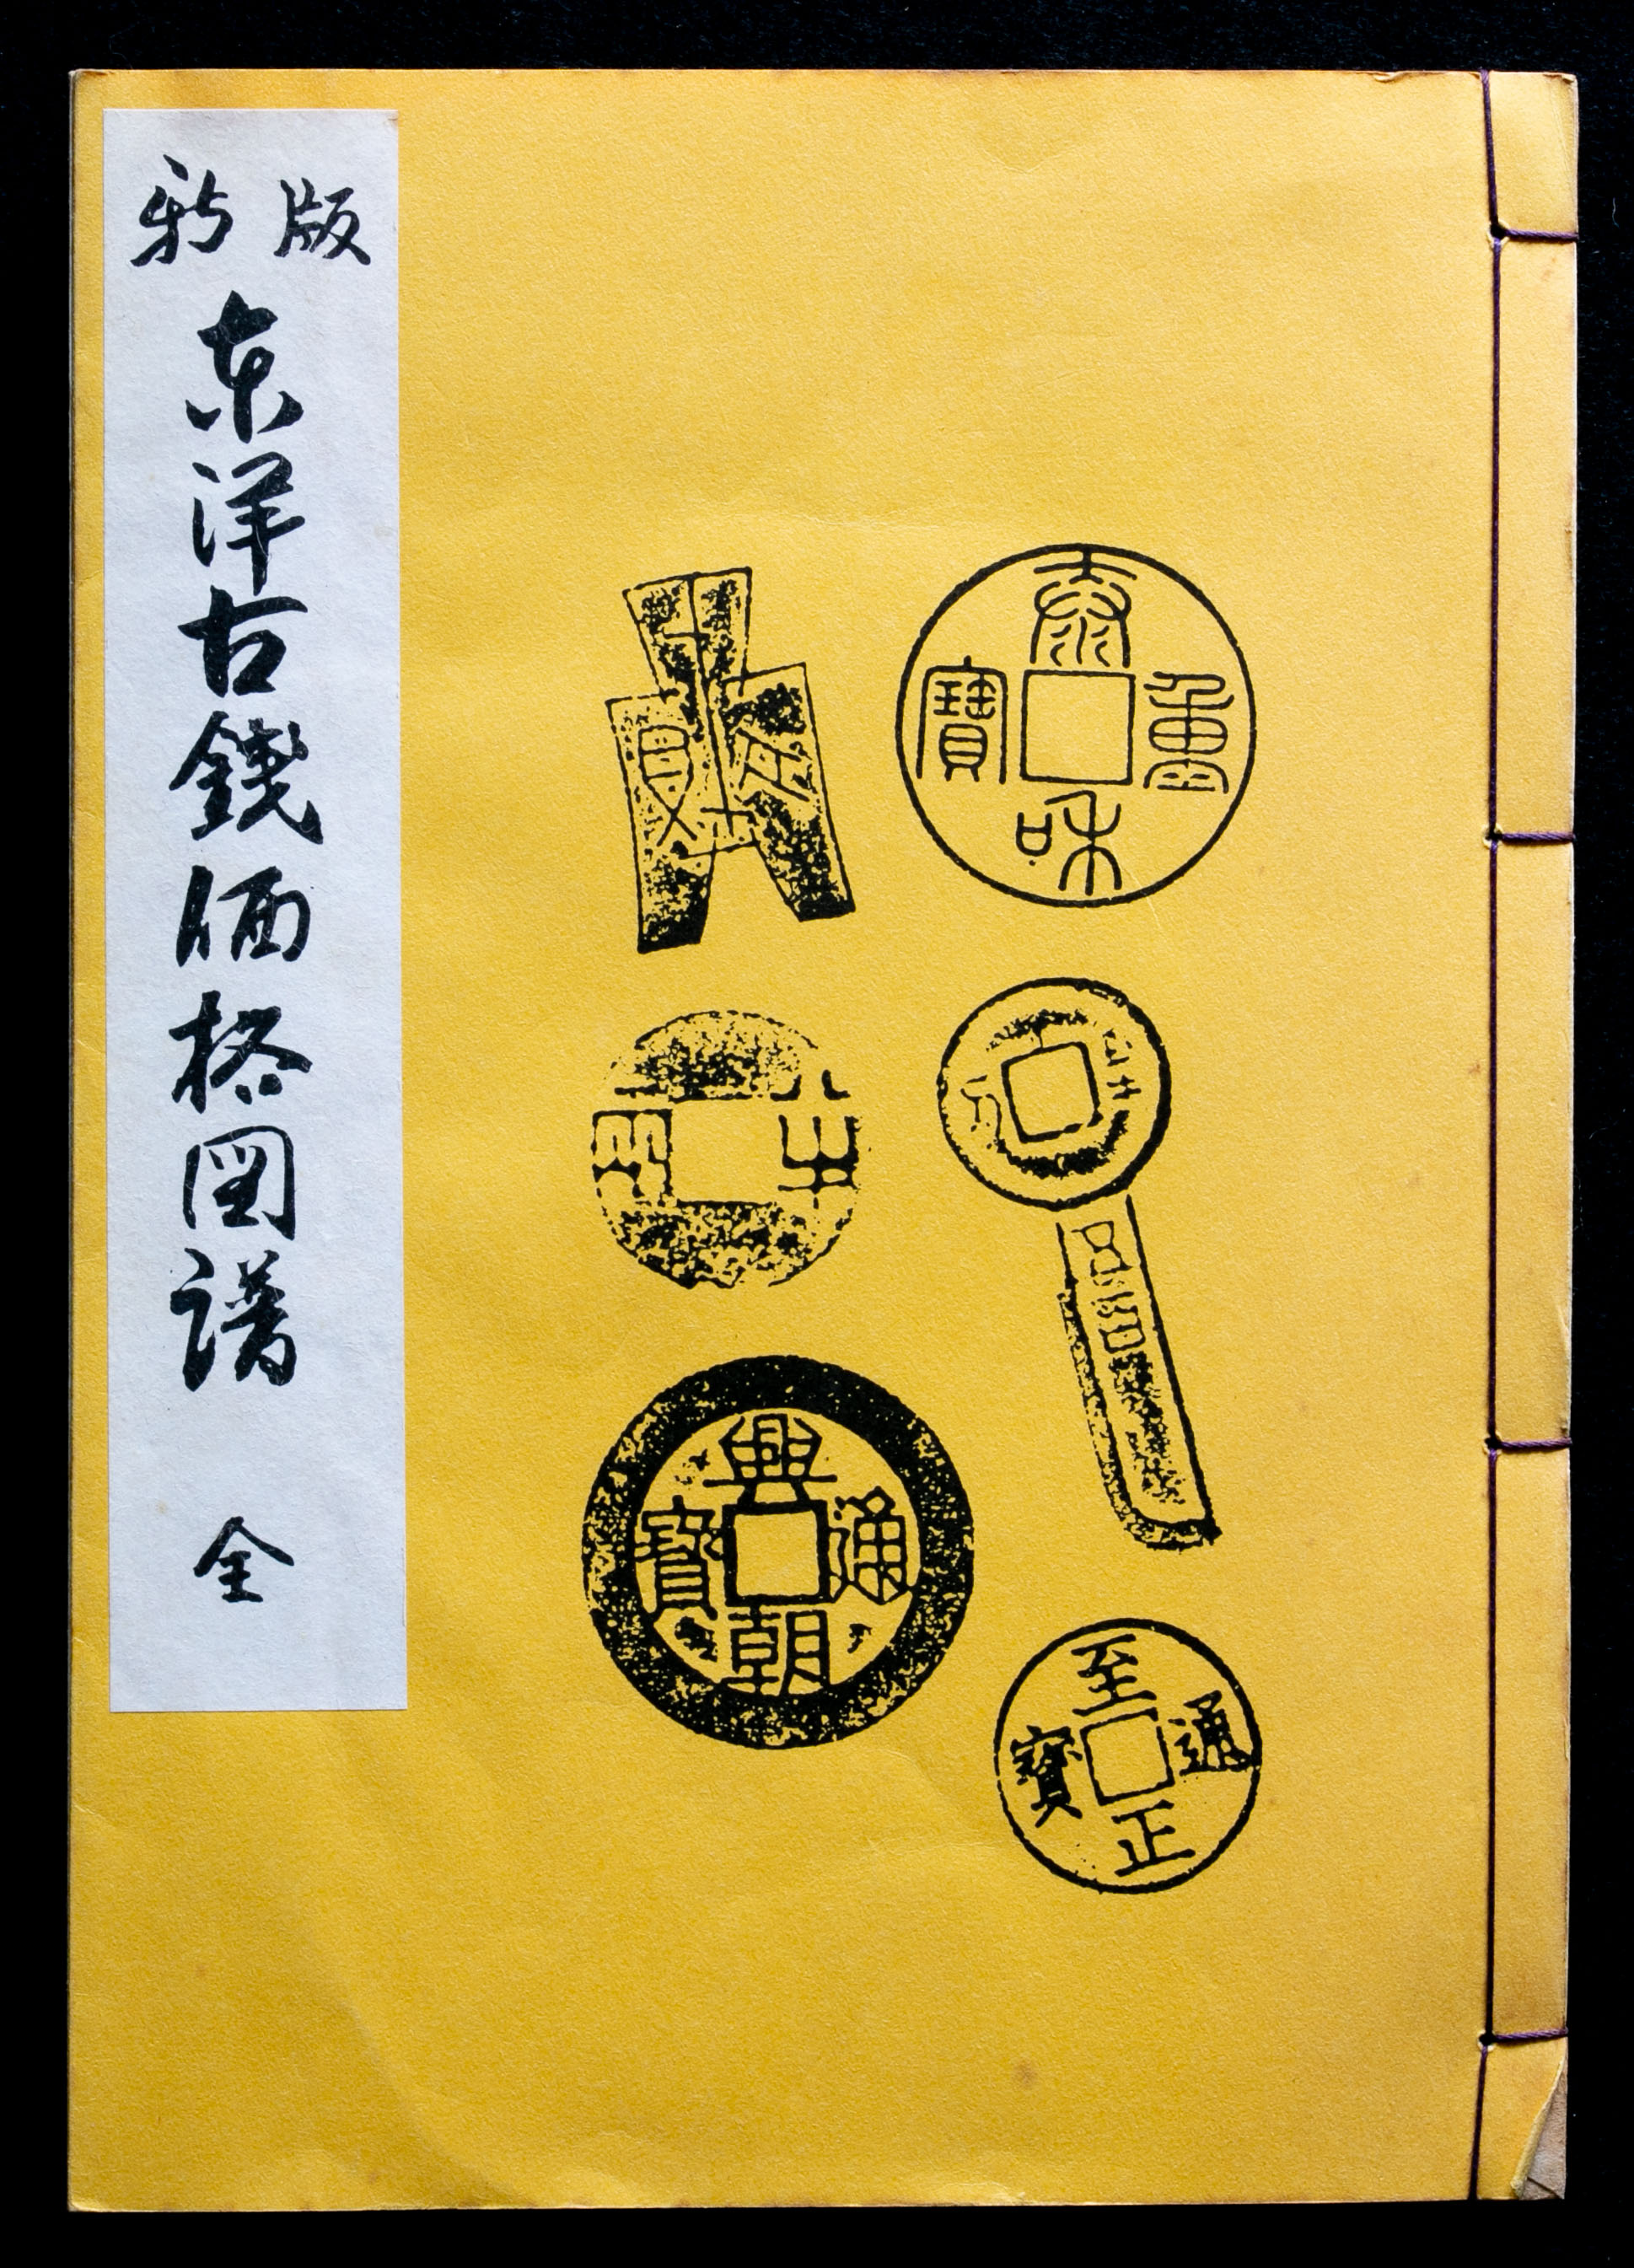 貨幣博物館 | Books 書籍 「新版 東洋古銭価格図譜 全」(第五版)大田 